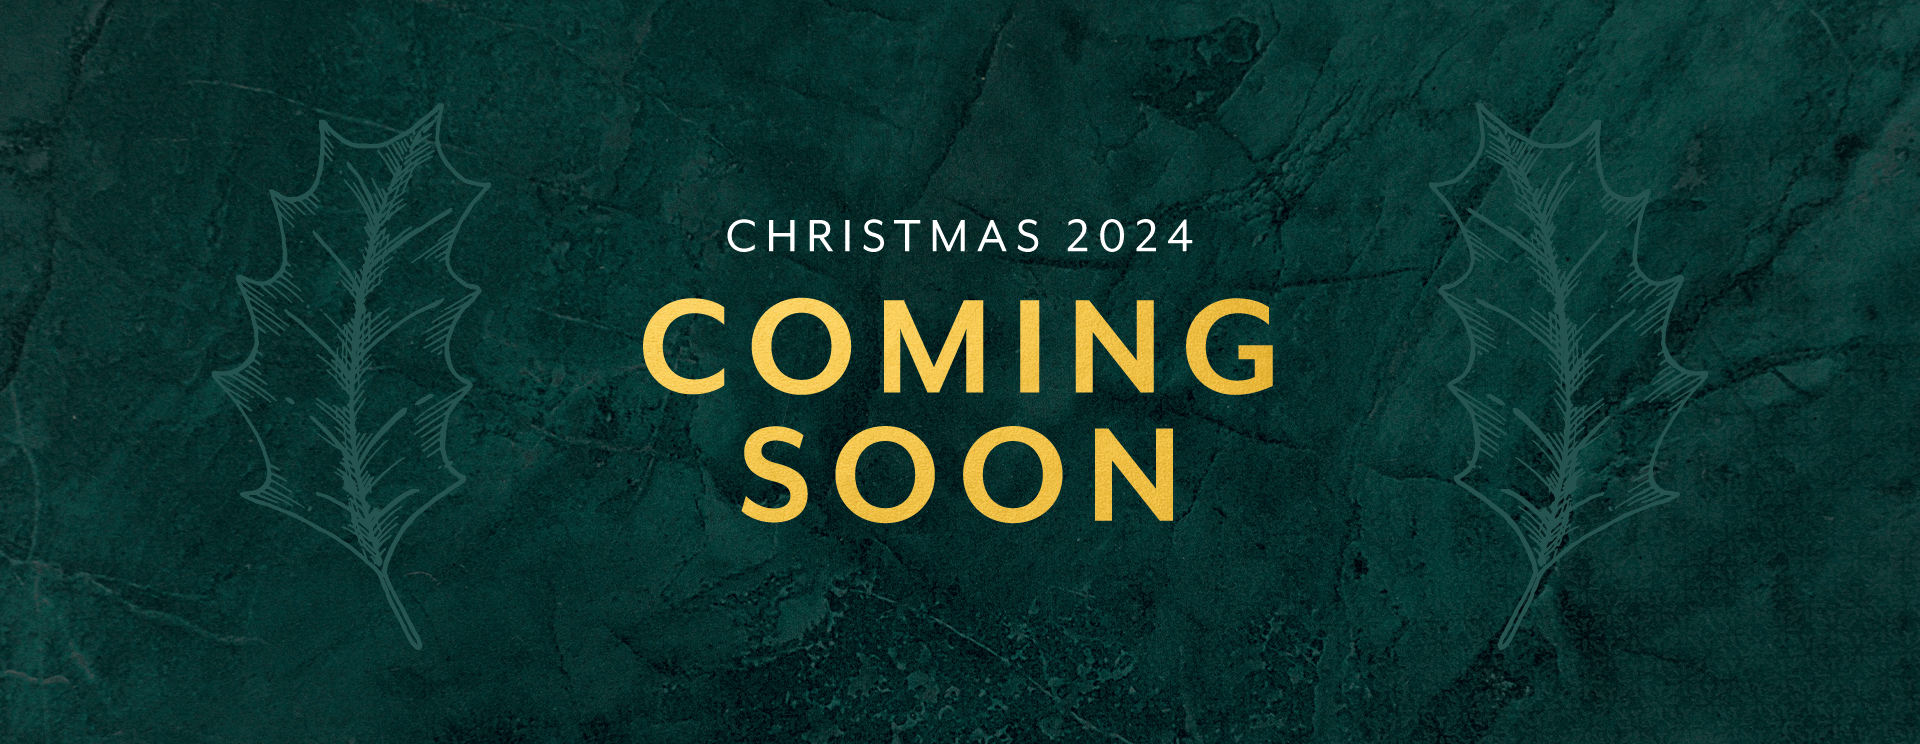 Christmas 2024 at Chorleywood